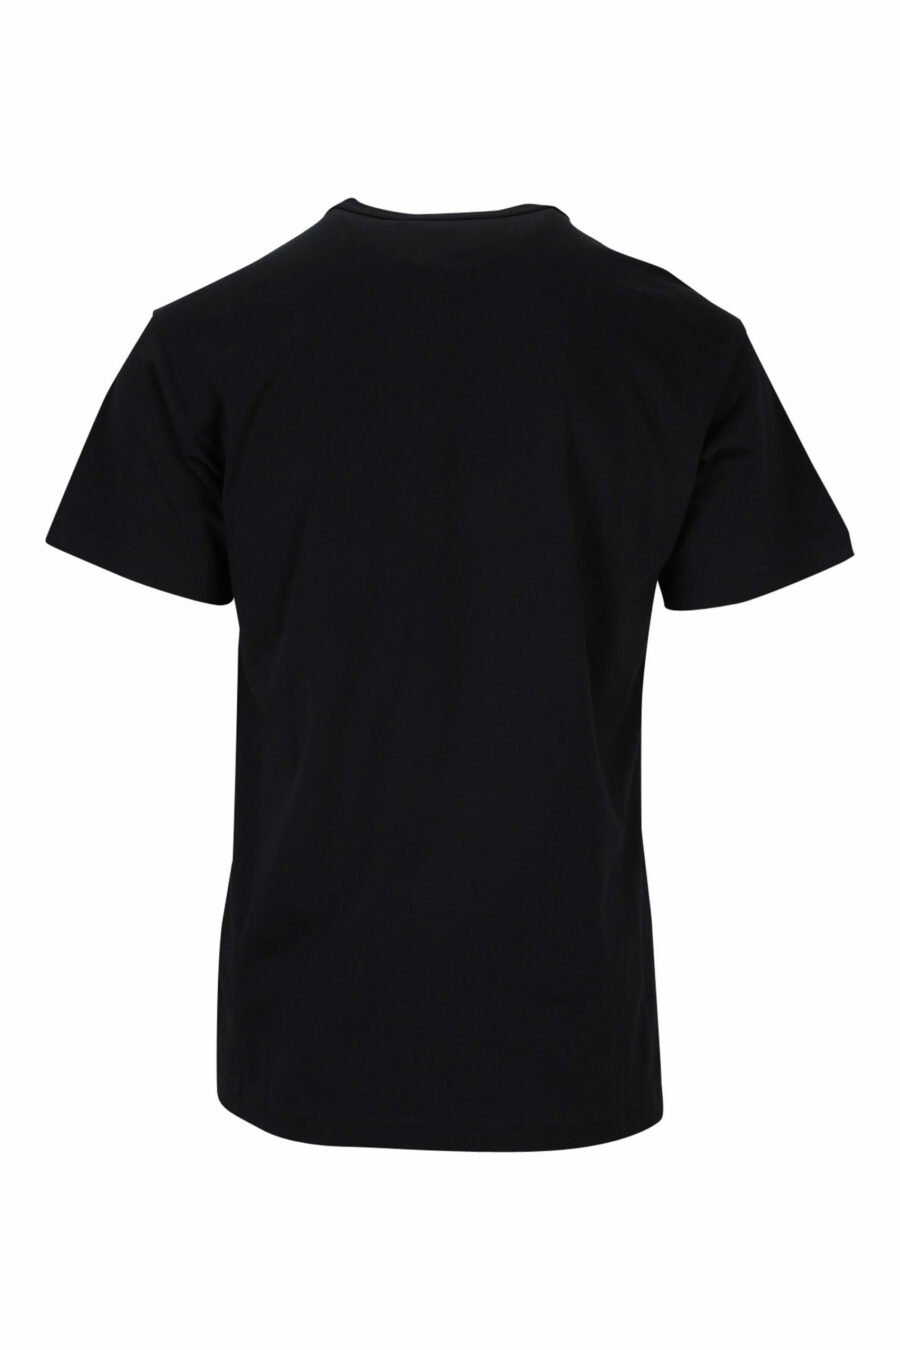 Camiseta negra con maxilogo circular barroco - 8052019477481 1 scaled